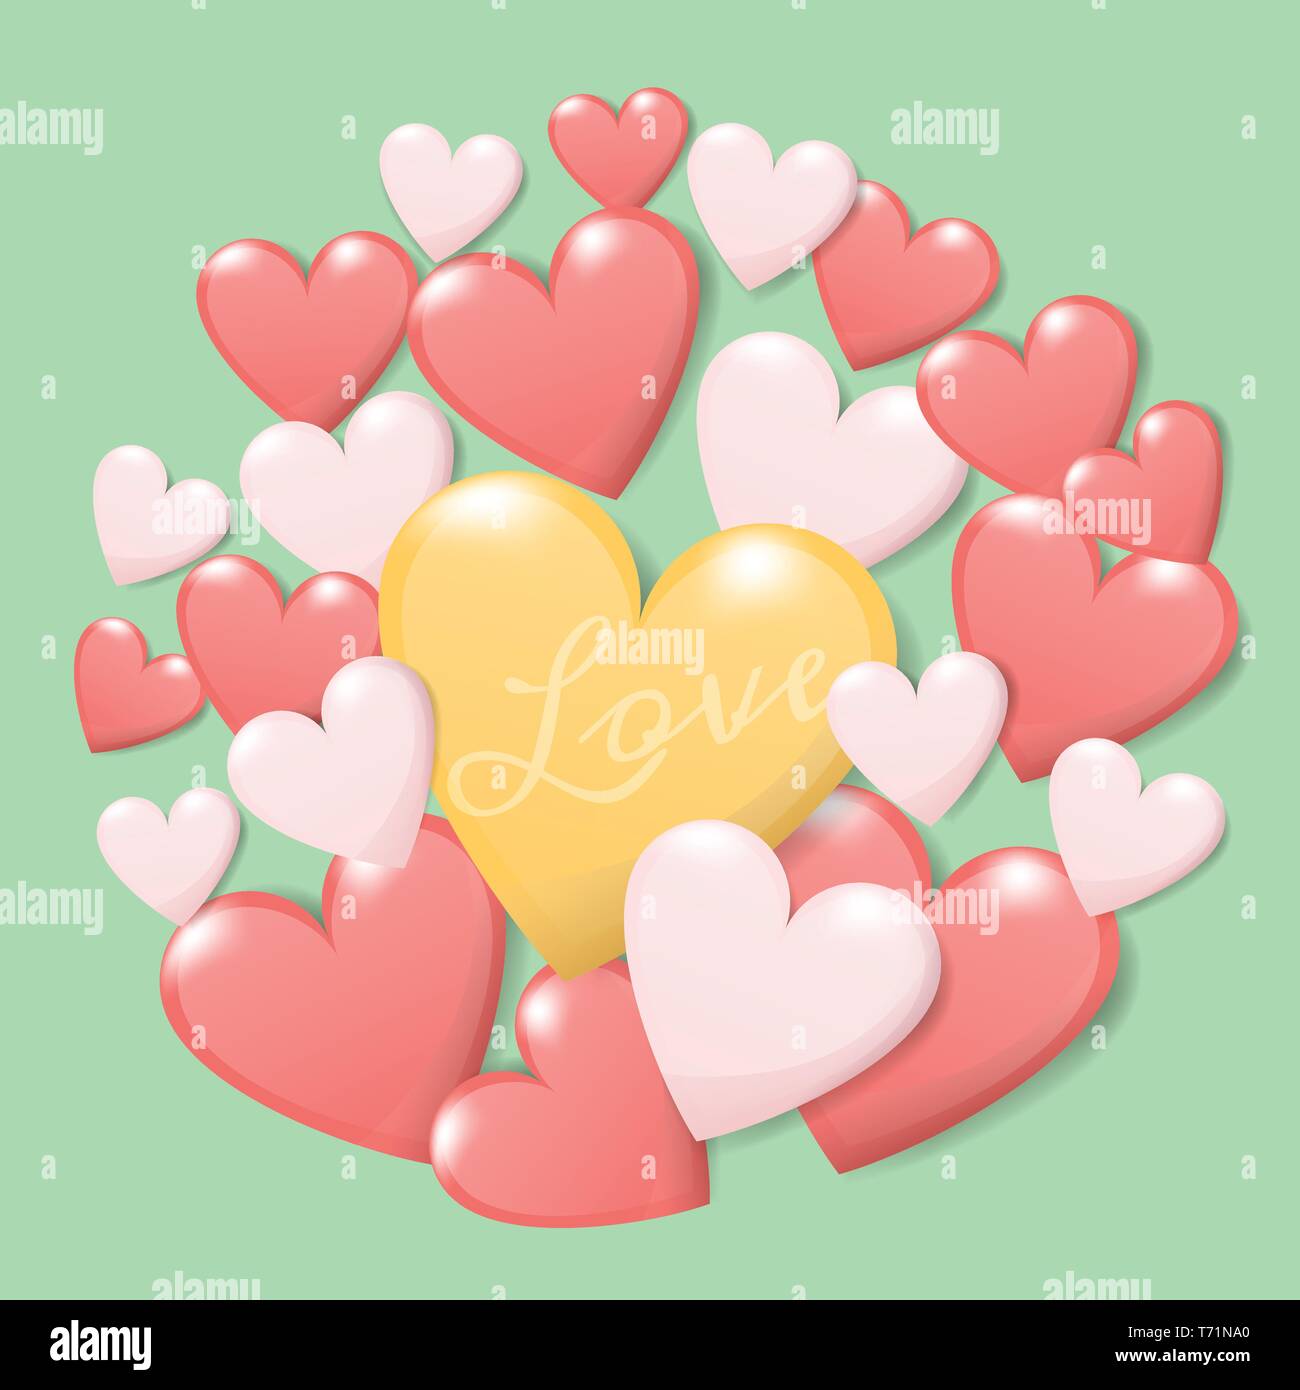 Buon San Valentino concetto. gruppo di cuore colorato con testo amore isolare su sfondo verde. vettore creative greeting card design Illustrazione Vettoriale